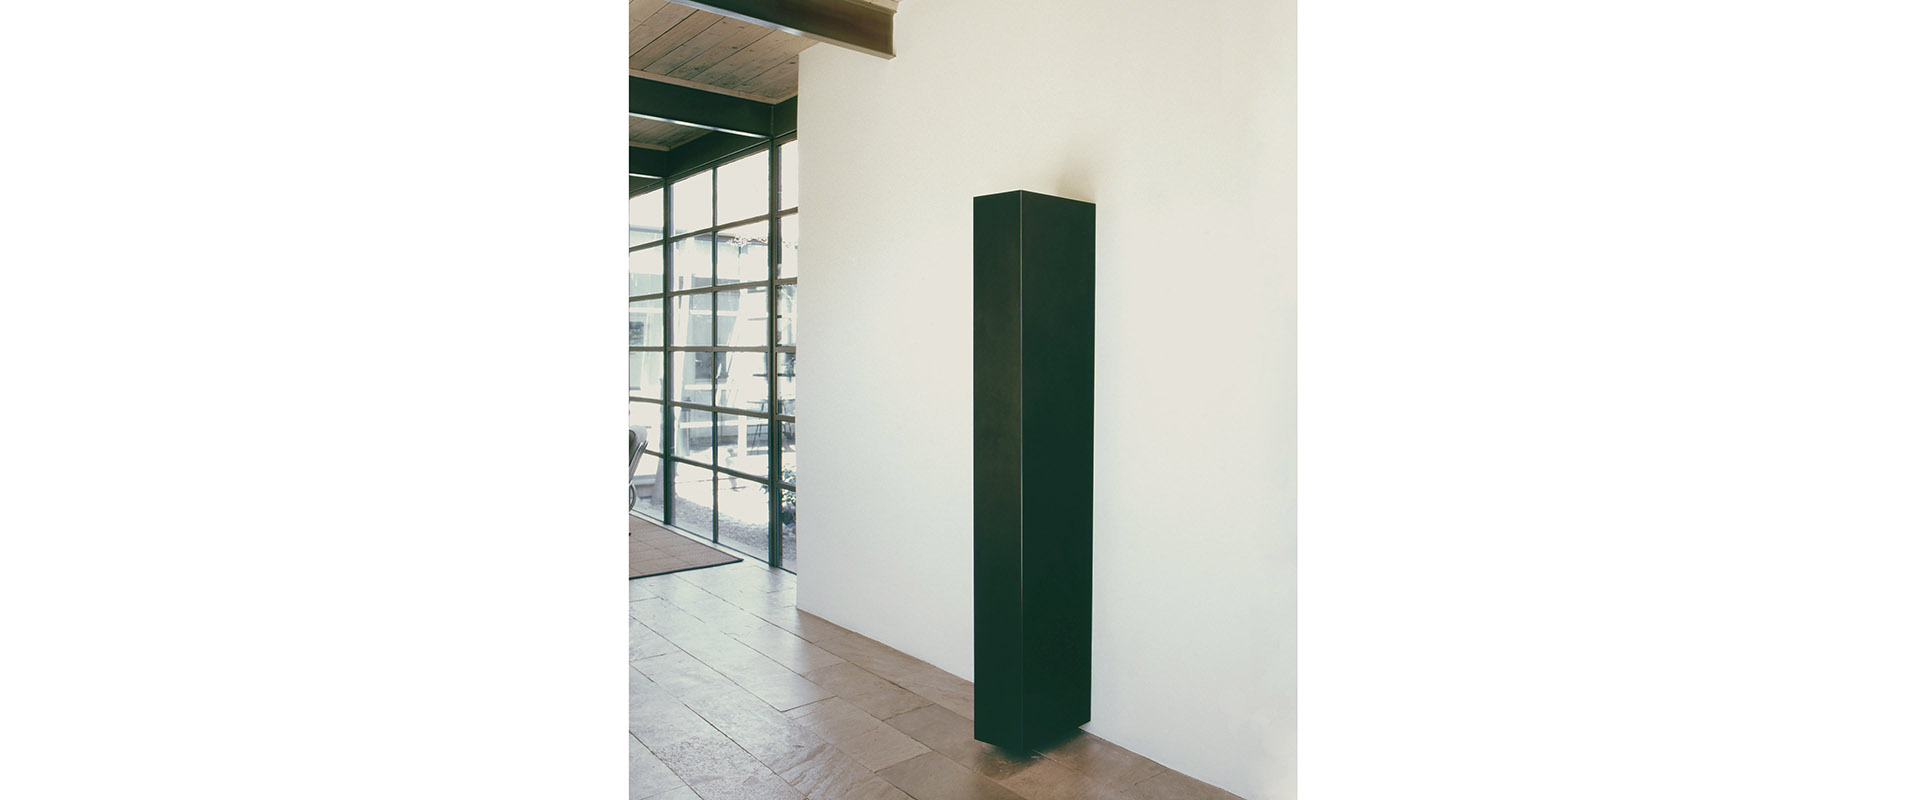 Ausstellungsansicht "Tilted Column", Lannan Foundation, Santa Fe, NM, USA, 2008